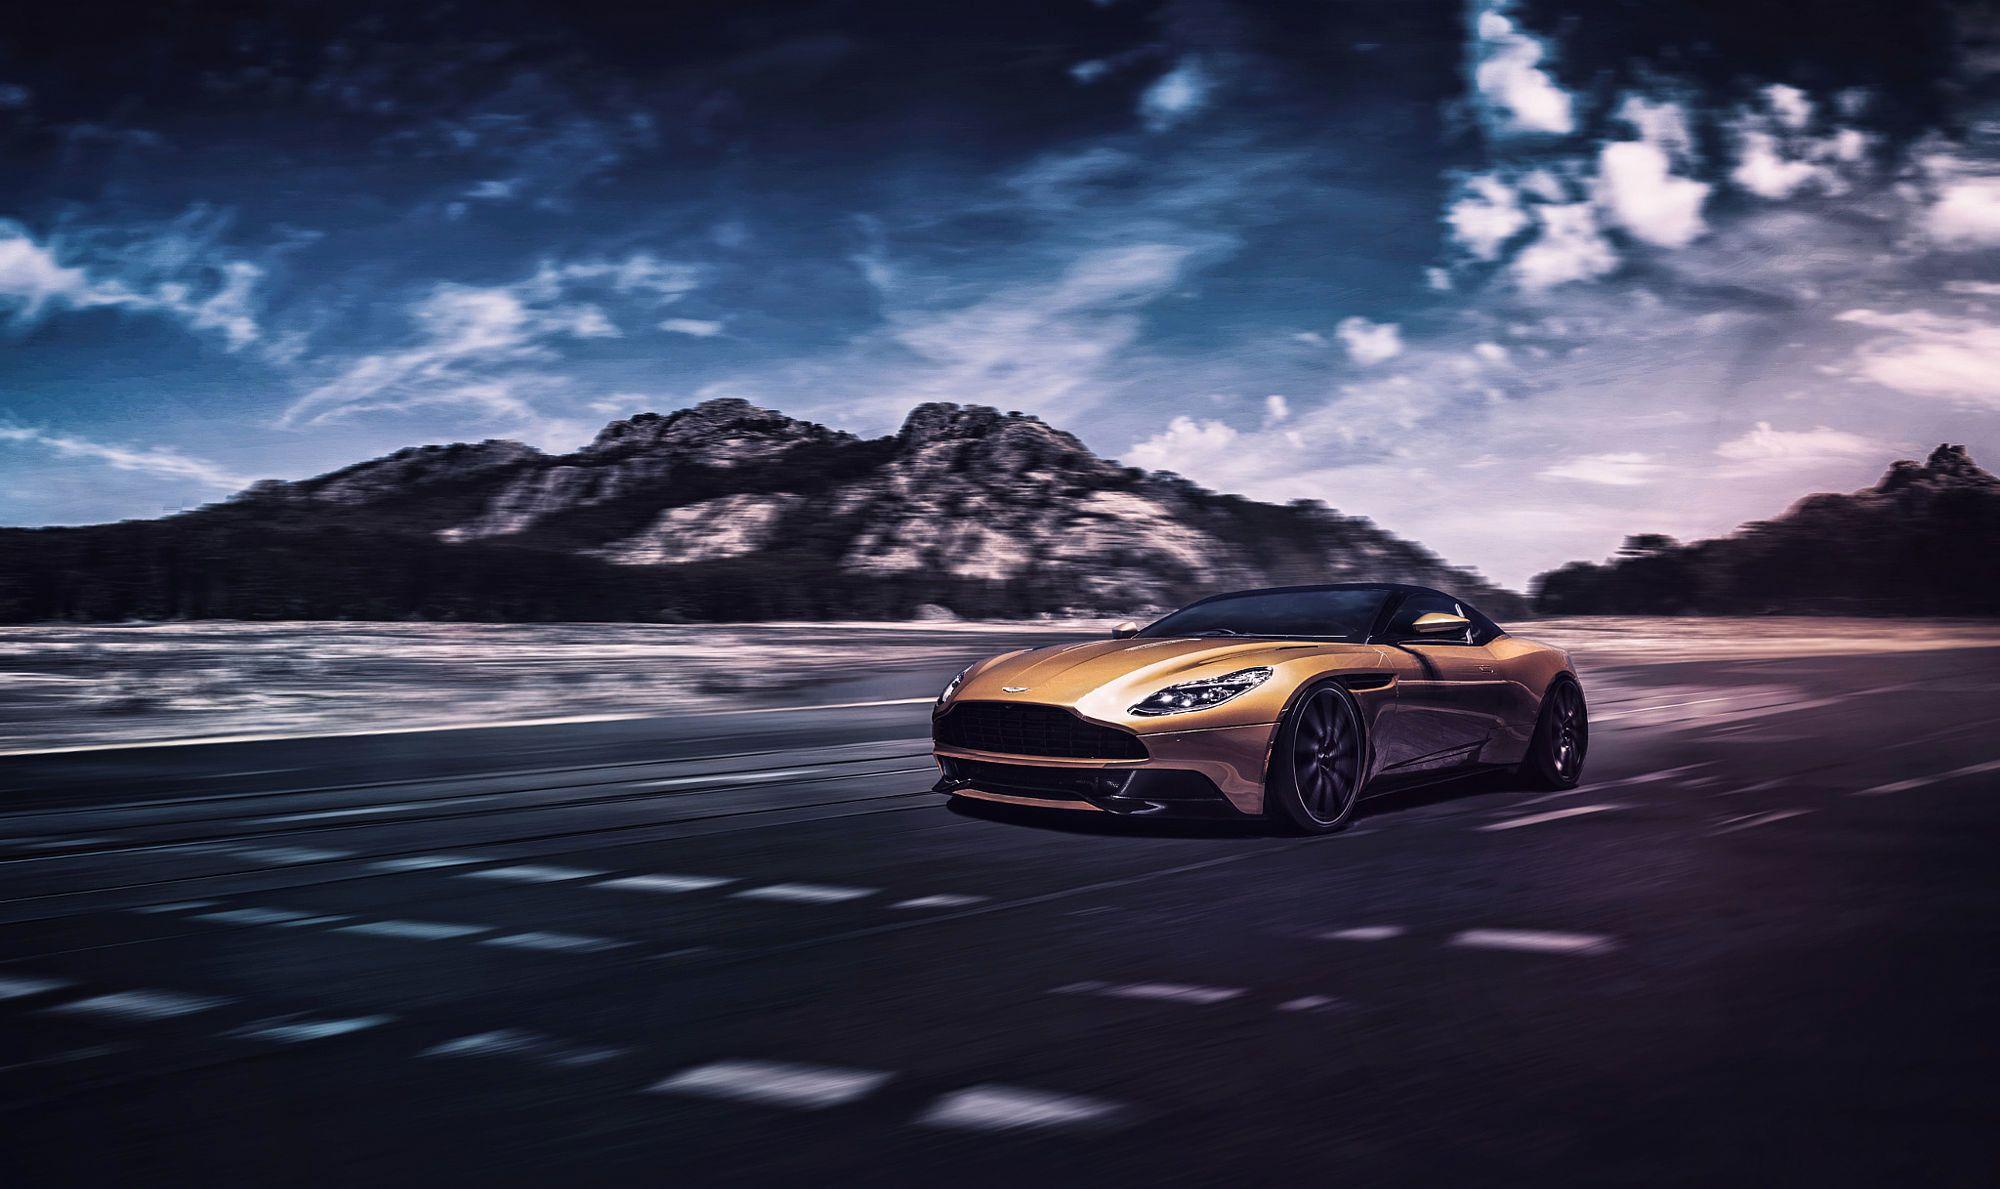 Aston Martin DB11 HD Wallpaper